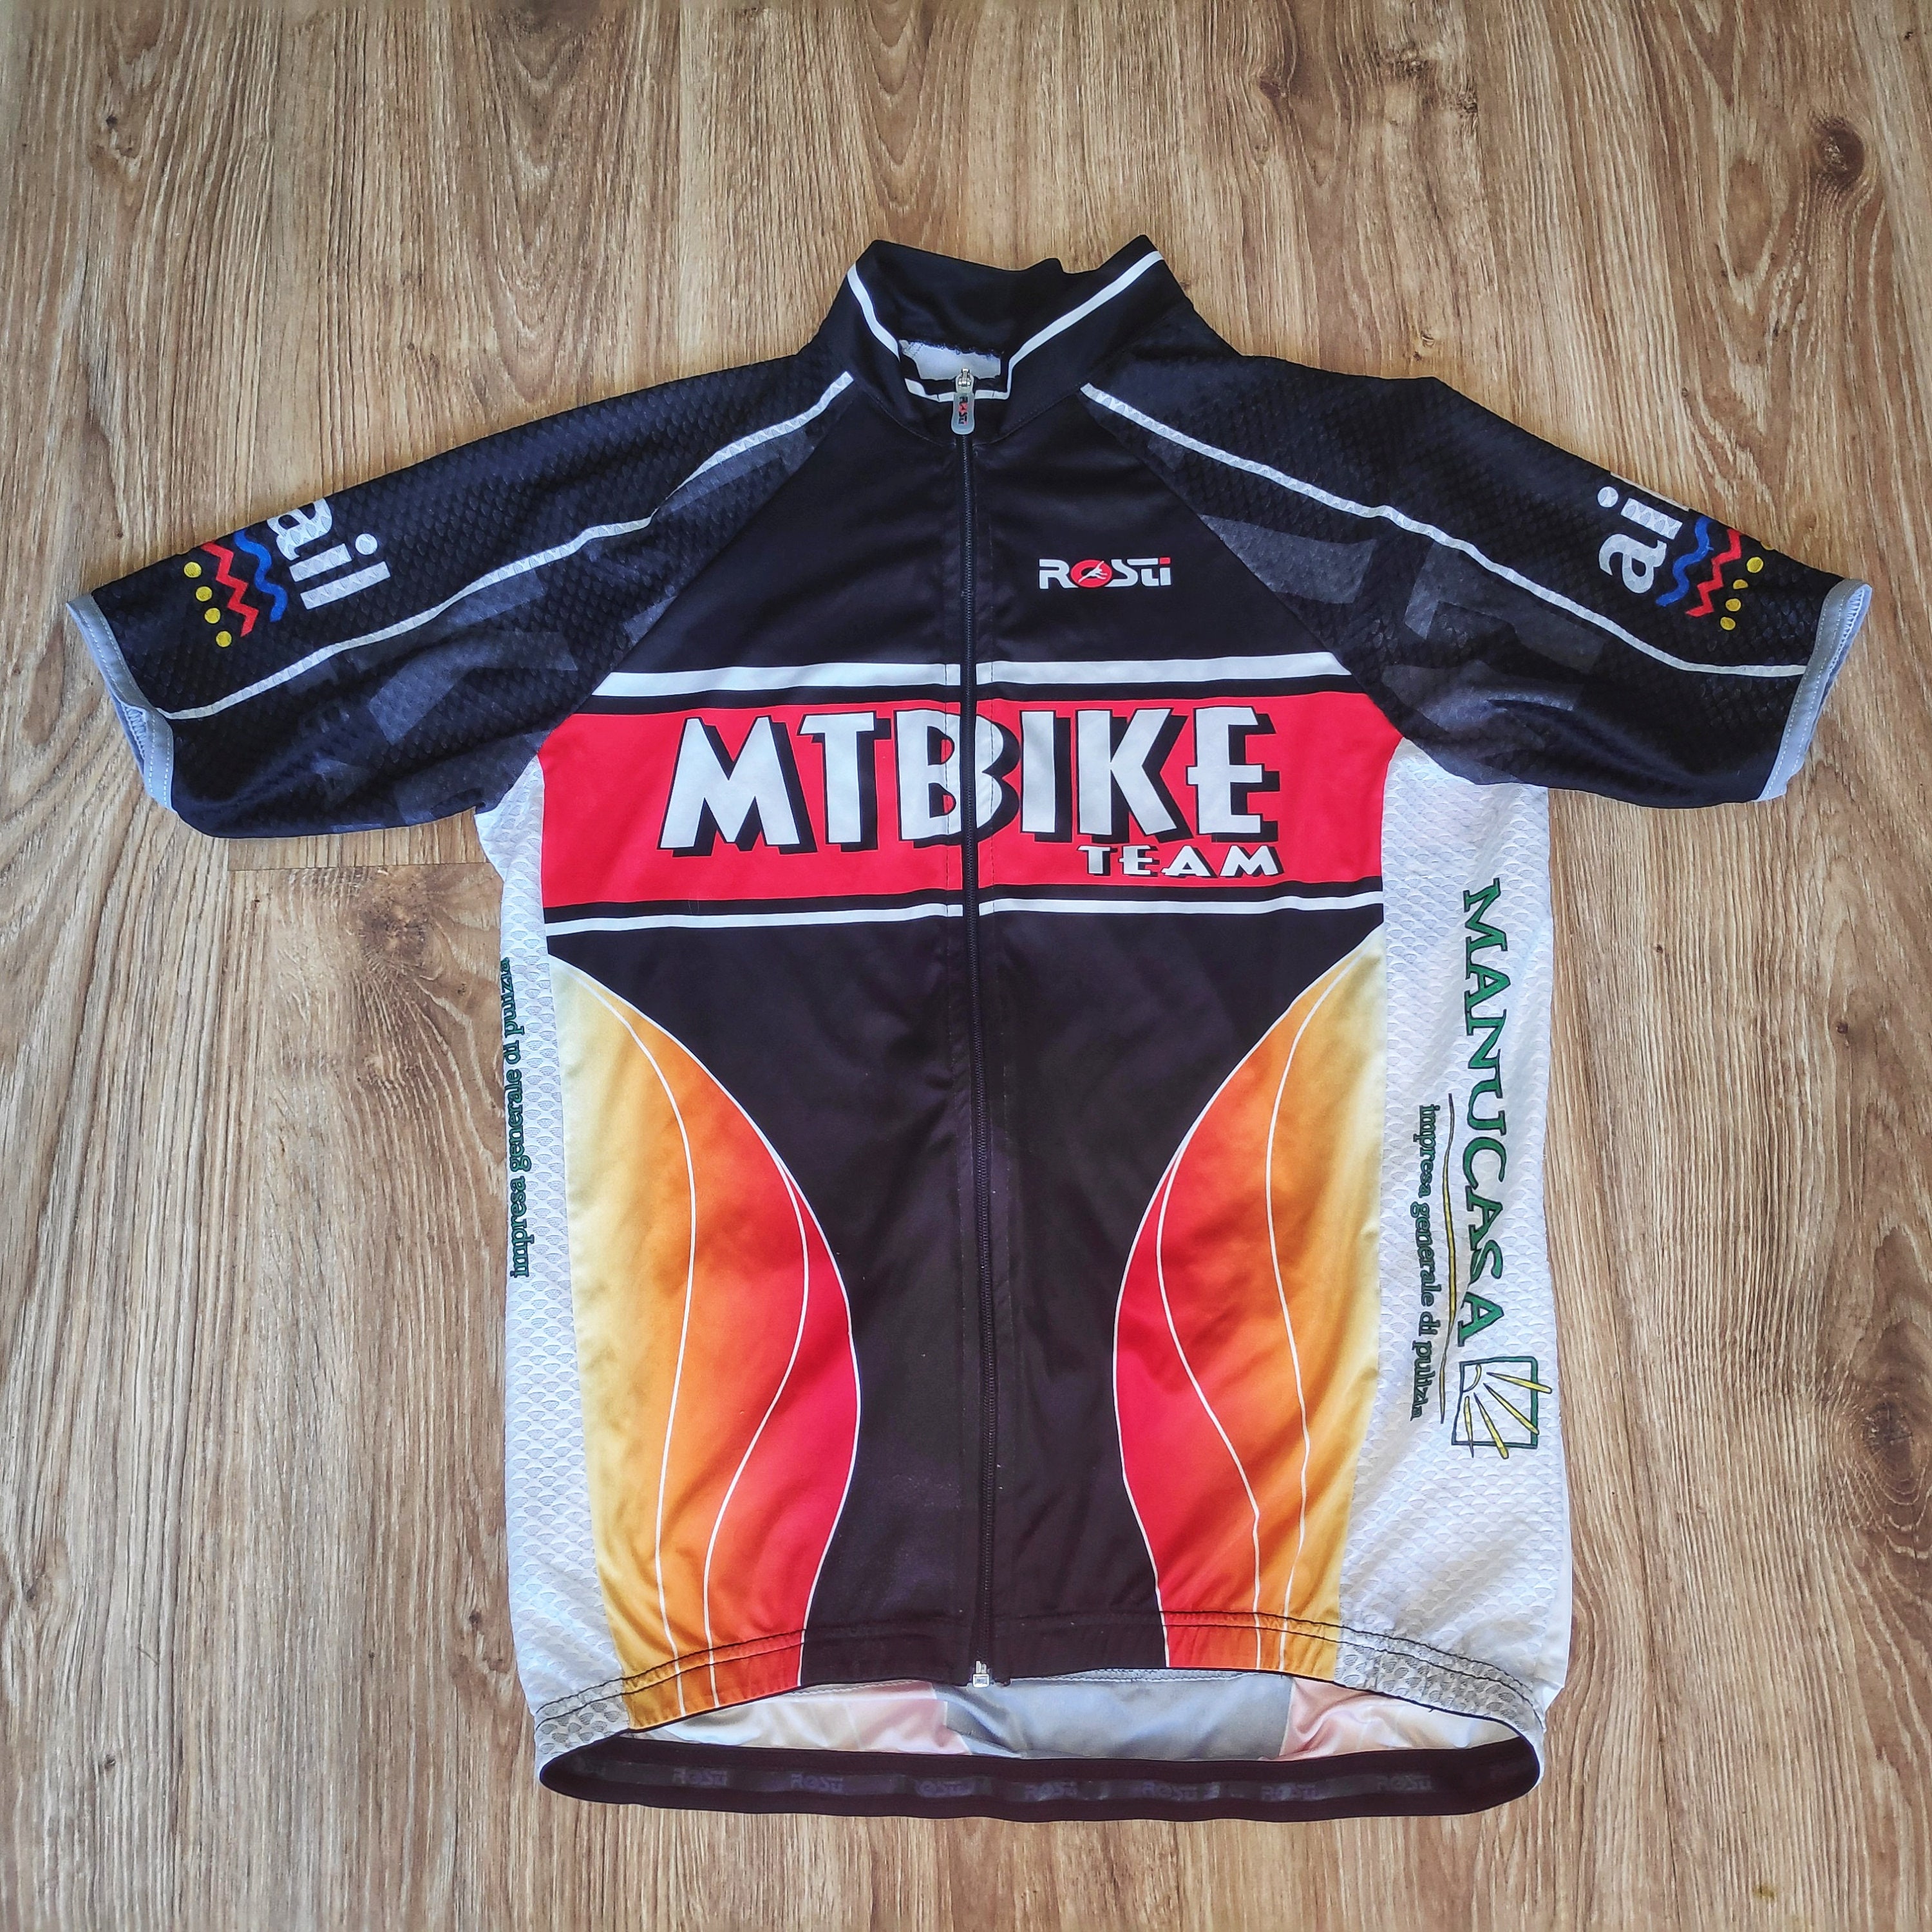 Vintage 90s Bike Cycling Jersey T-shirt Men by Lomax BMC 